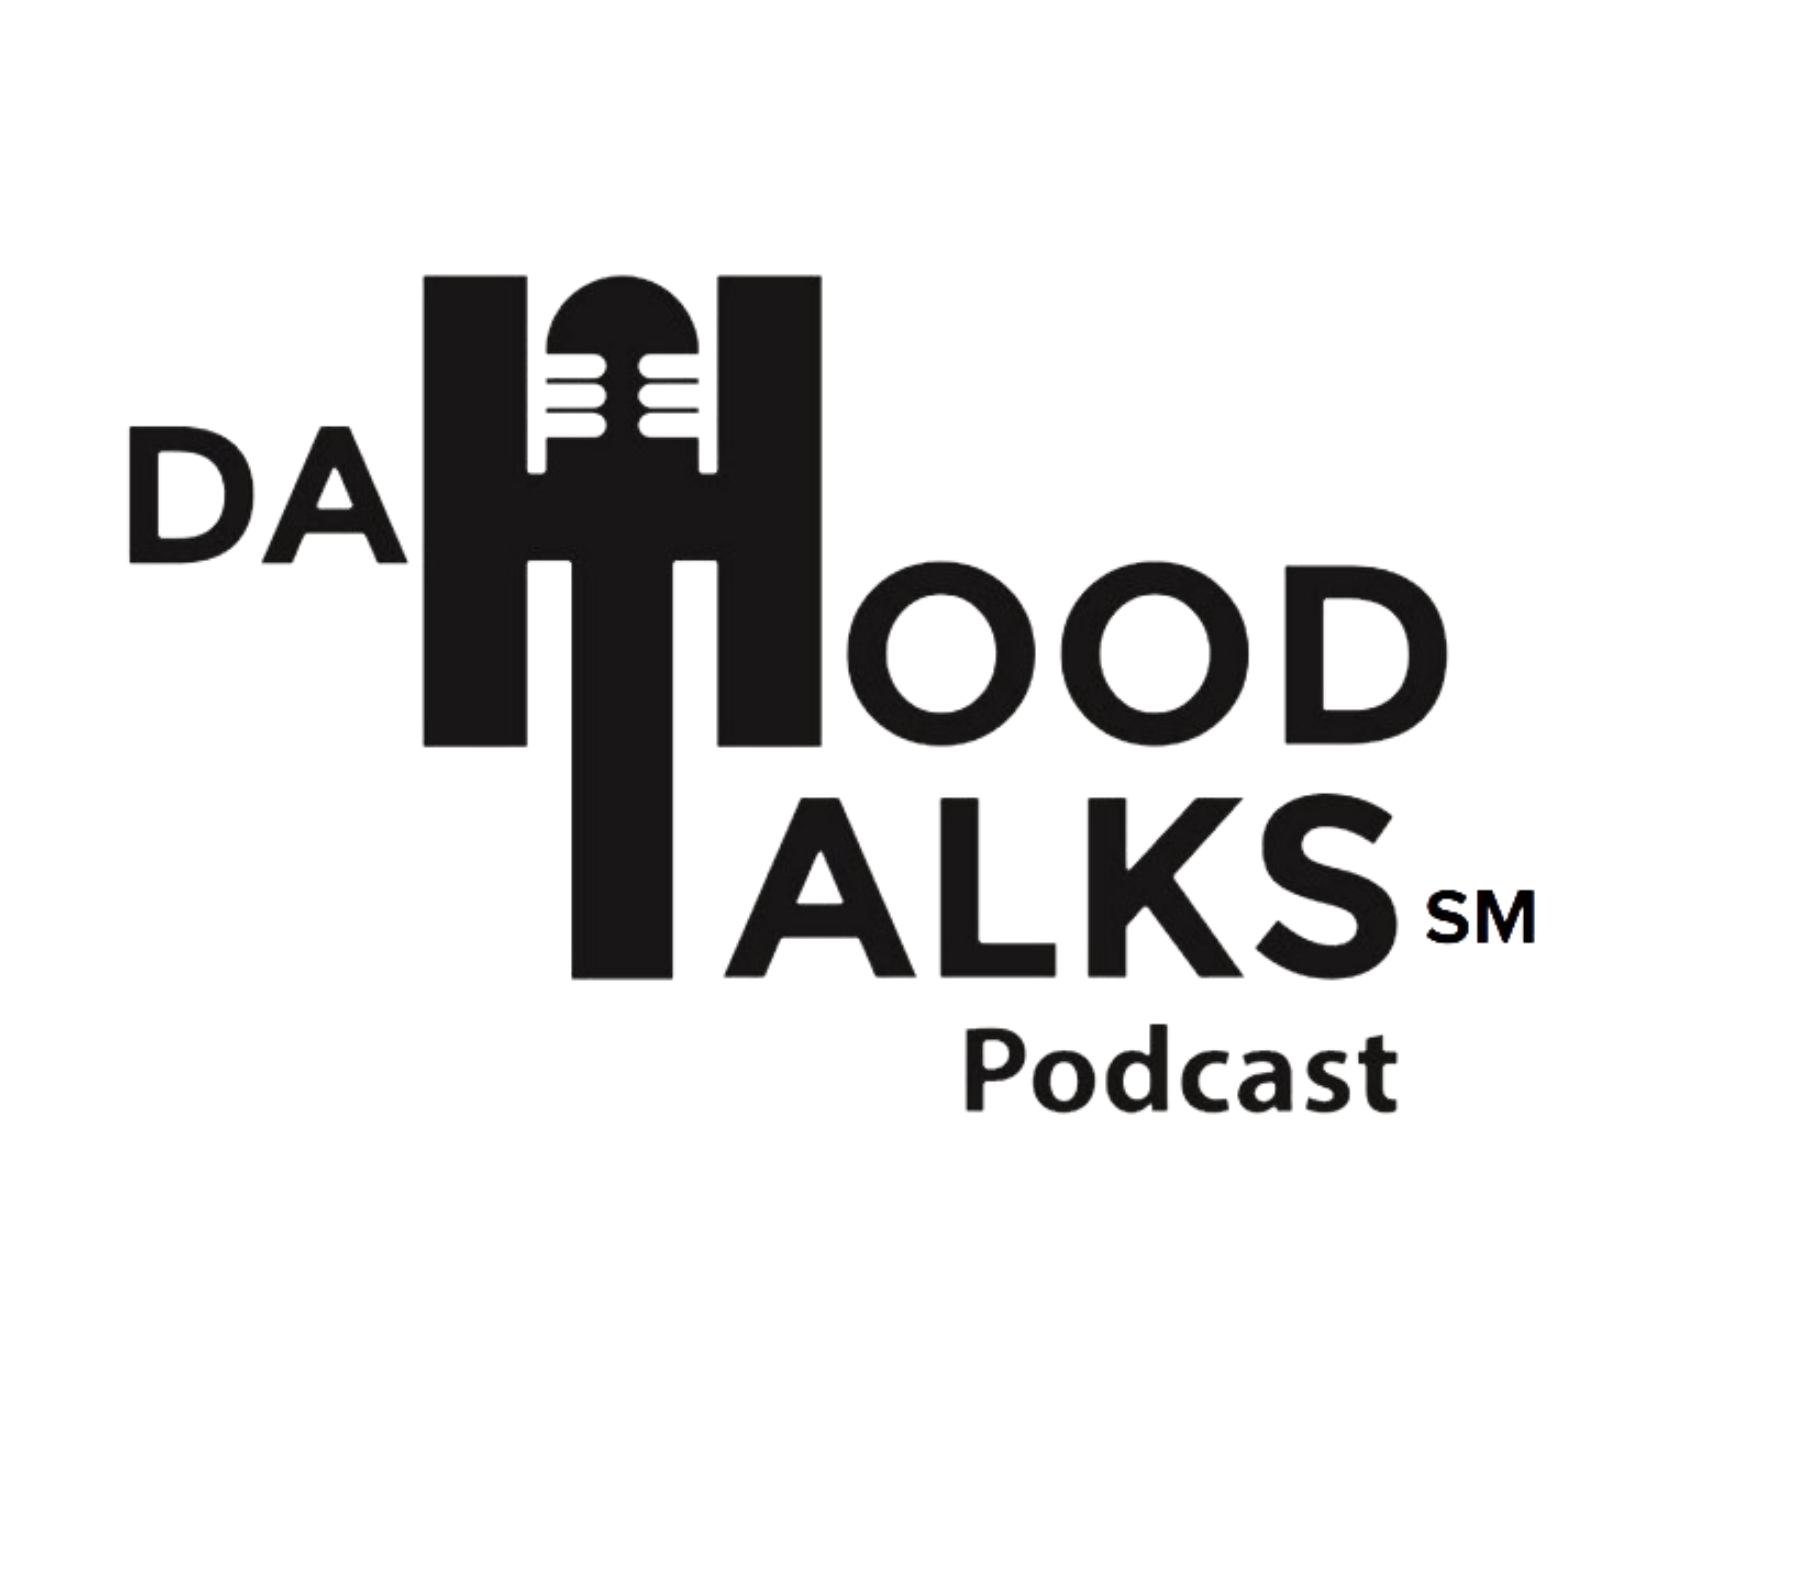 da hood talks logo